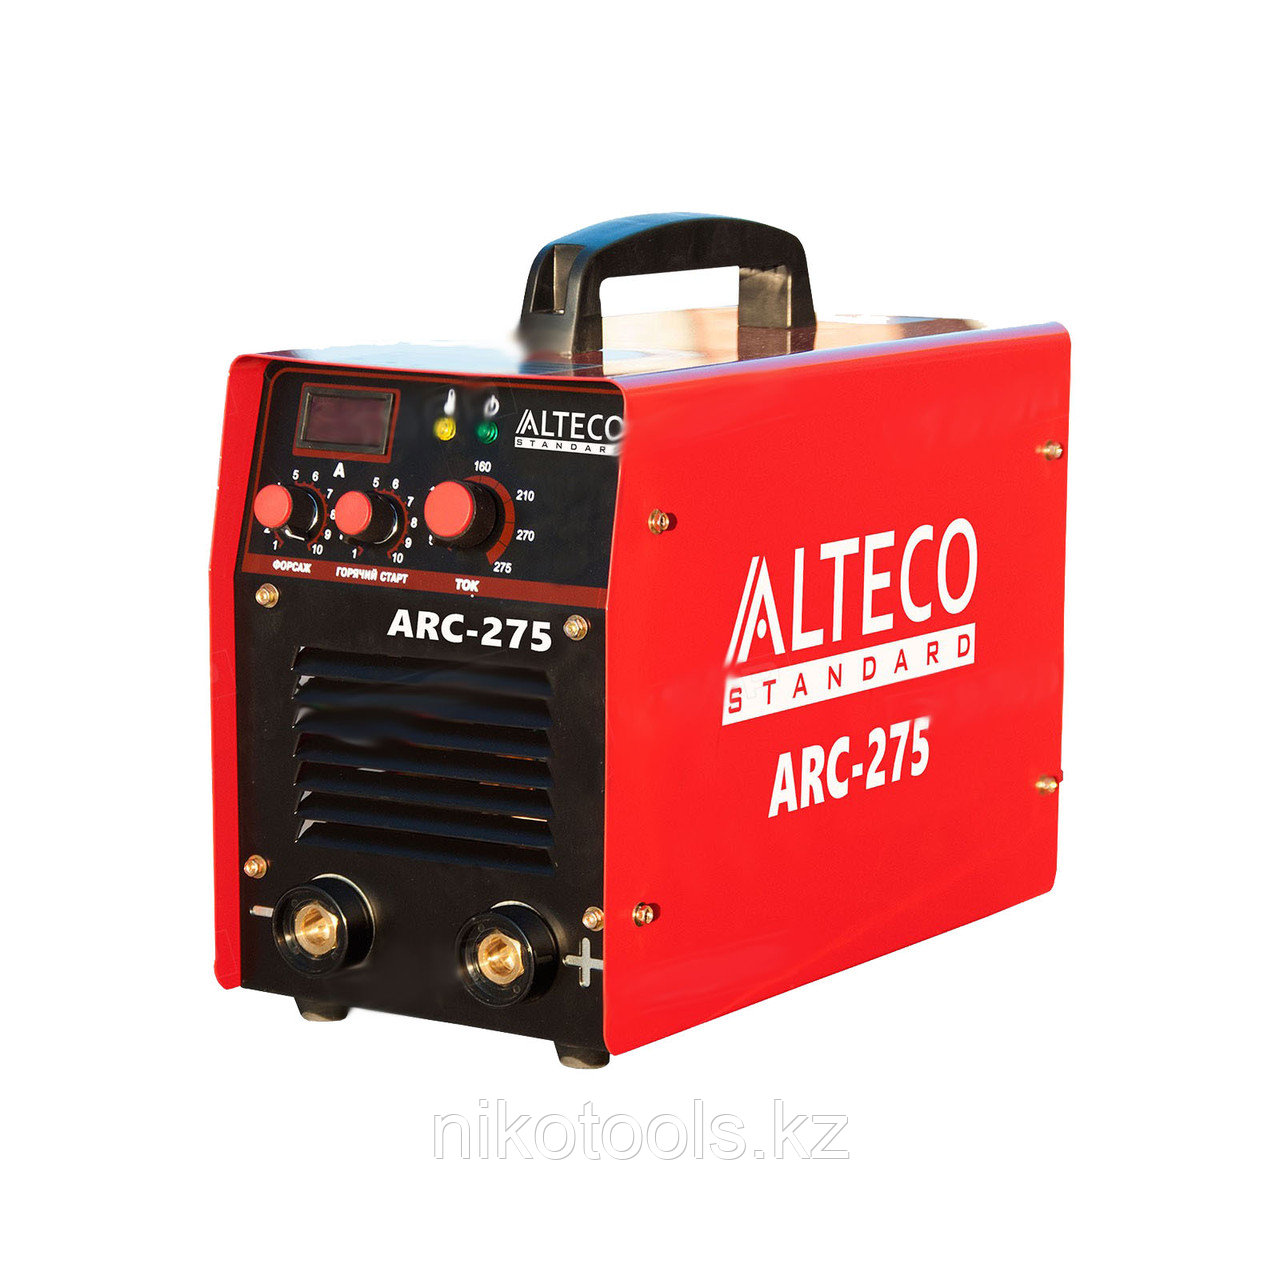  Сварочный аппарат ALTECO ARC-275